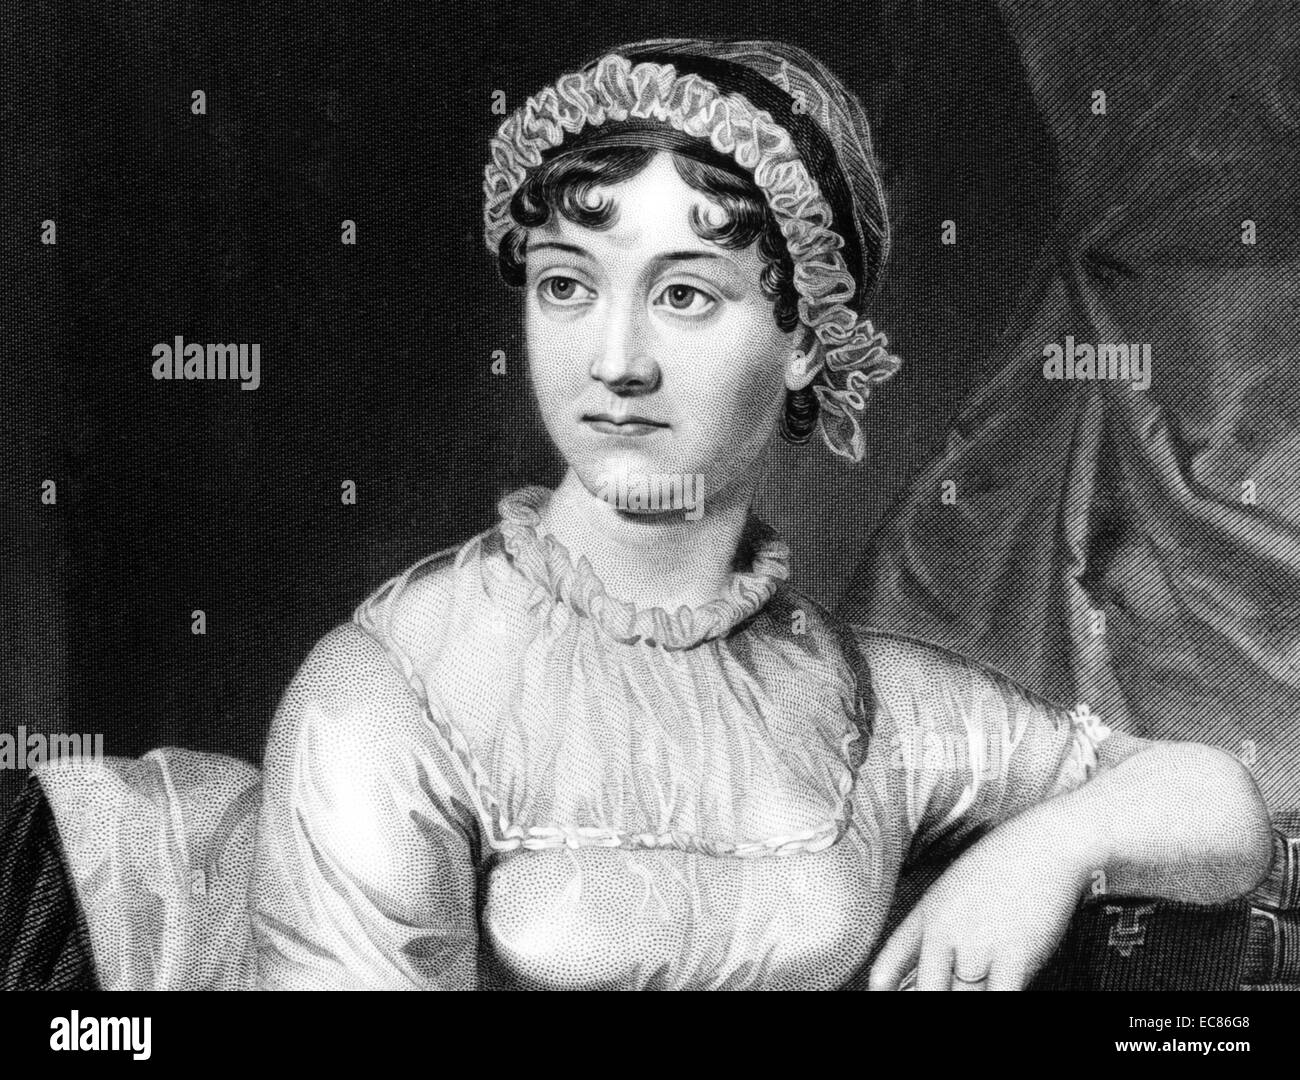 Portrait de Jane Austen (1775-1817), romancier anglais, dont les œuvres de fiction ou romantique. Datée 1810 Banque D'Images